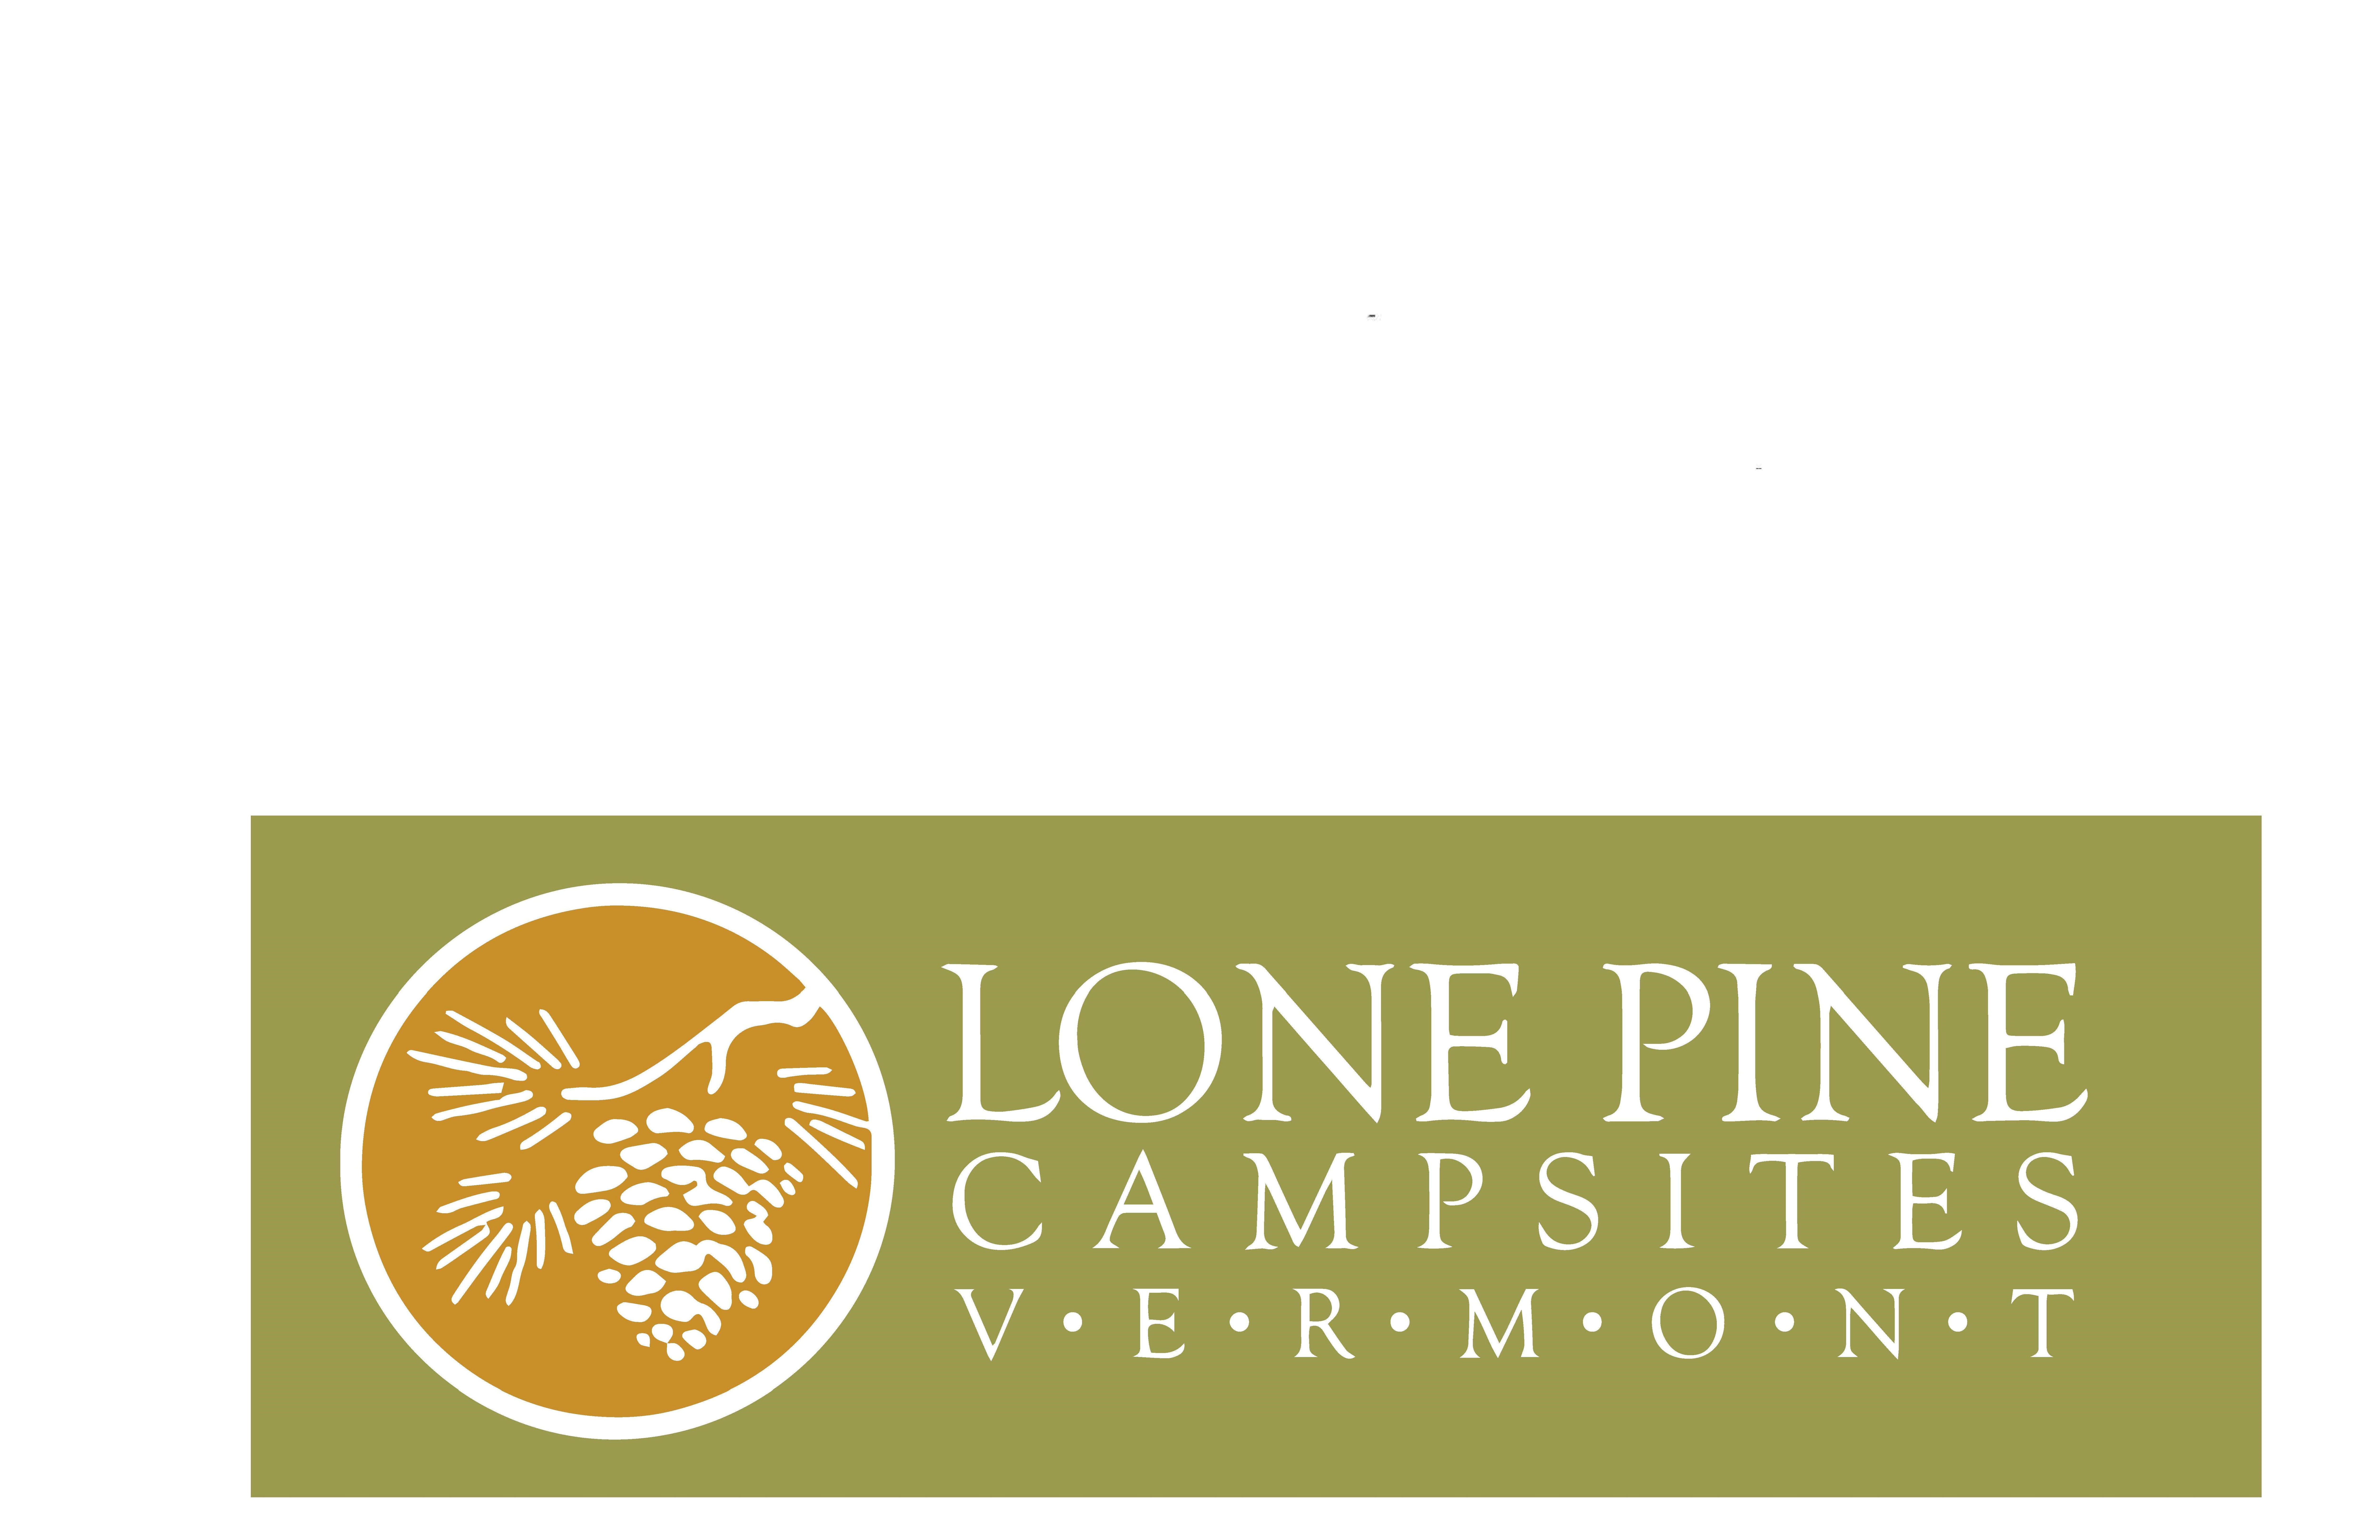 Lone Pine Campsites